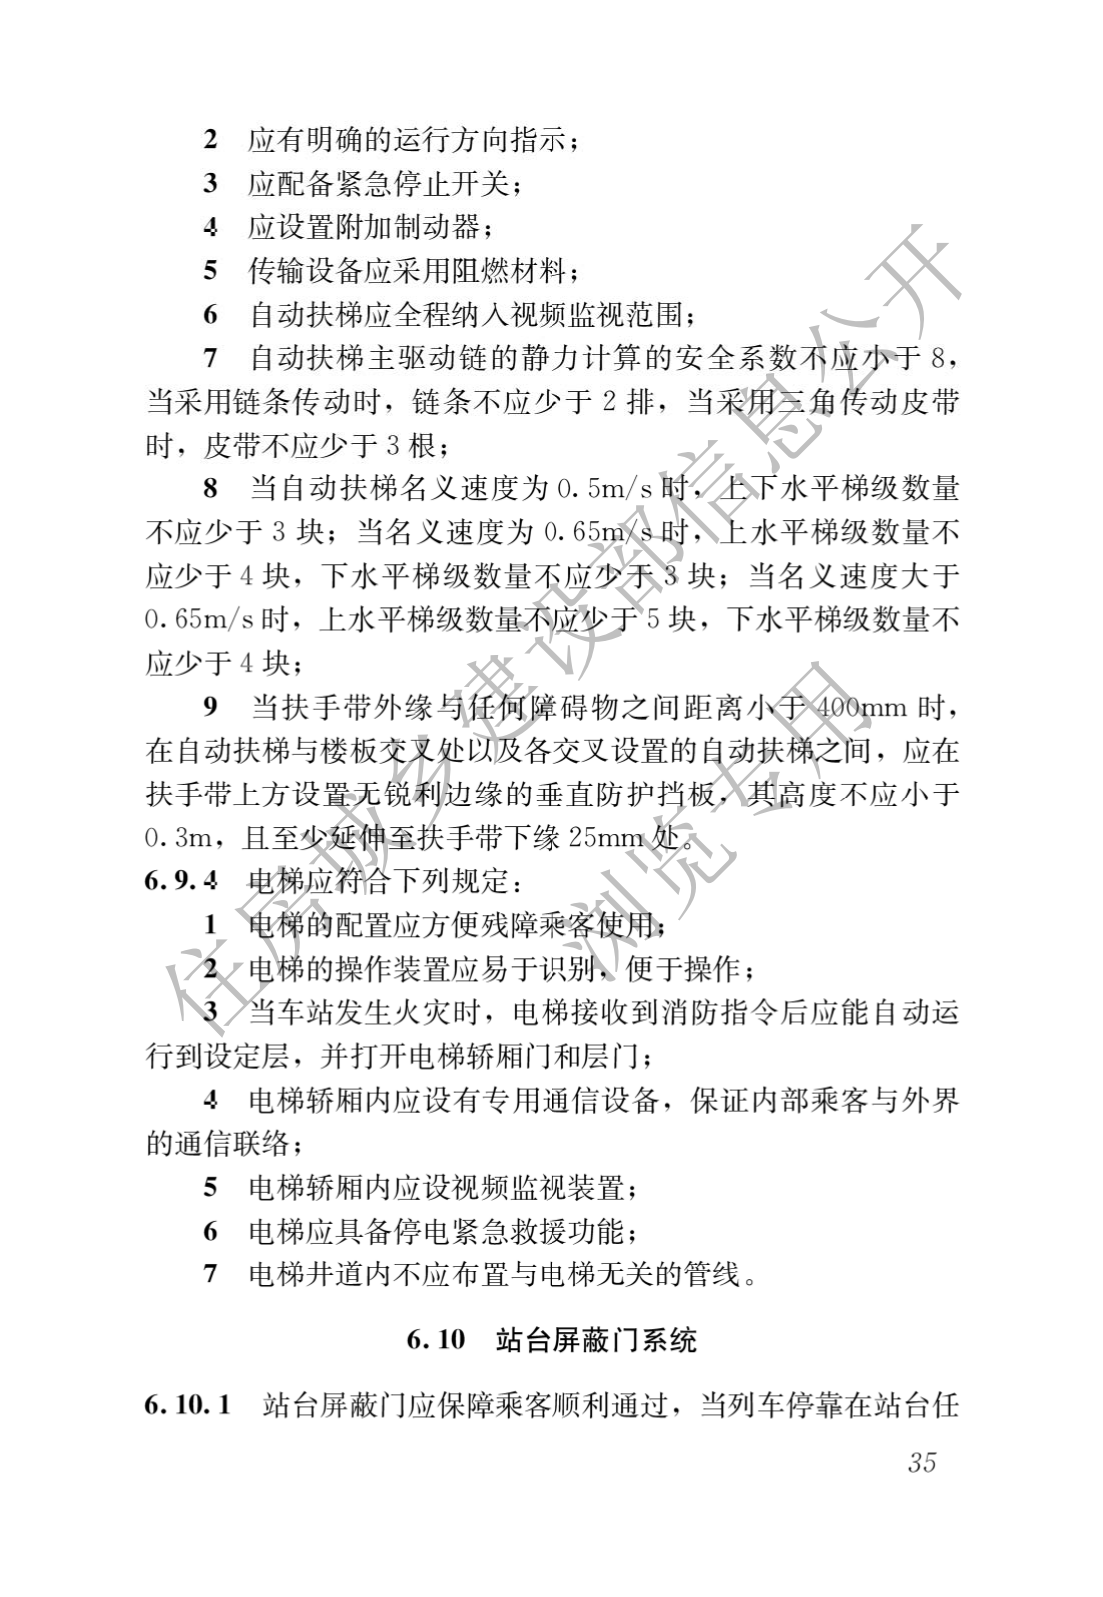 住房和城鄉建設部關于發布國家标準 《城市軌道交通工(gōng)程項目規範》的公告(圖39)